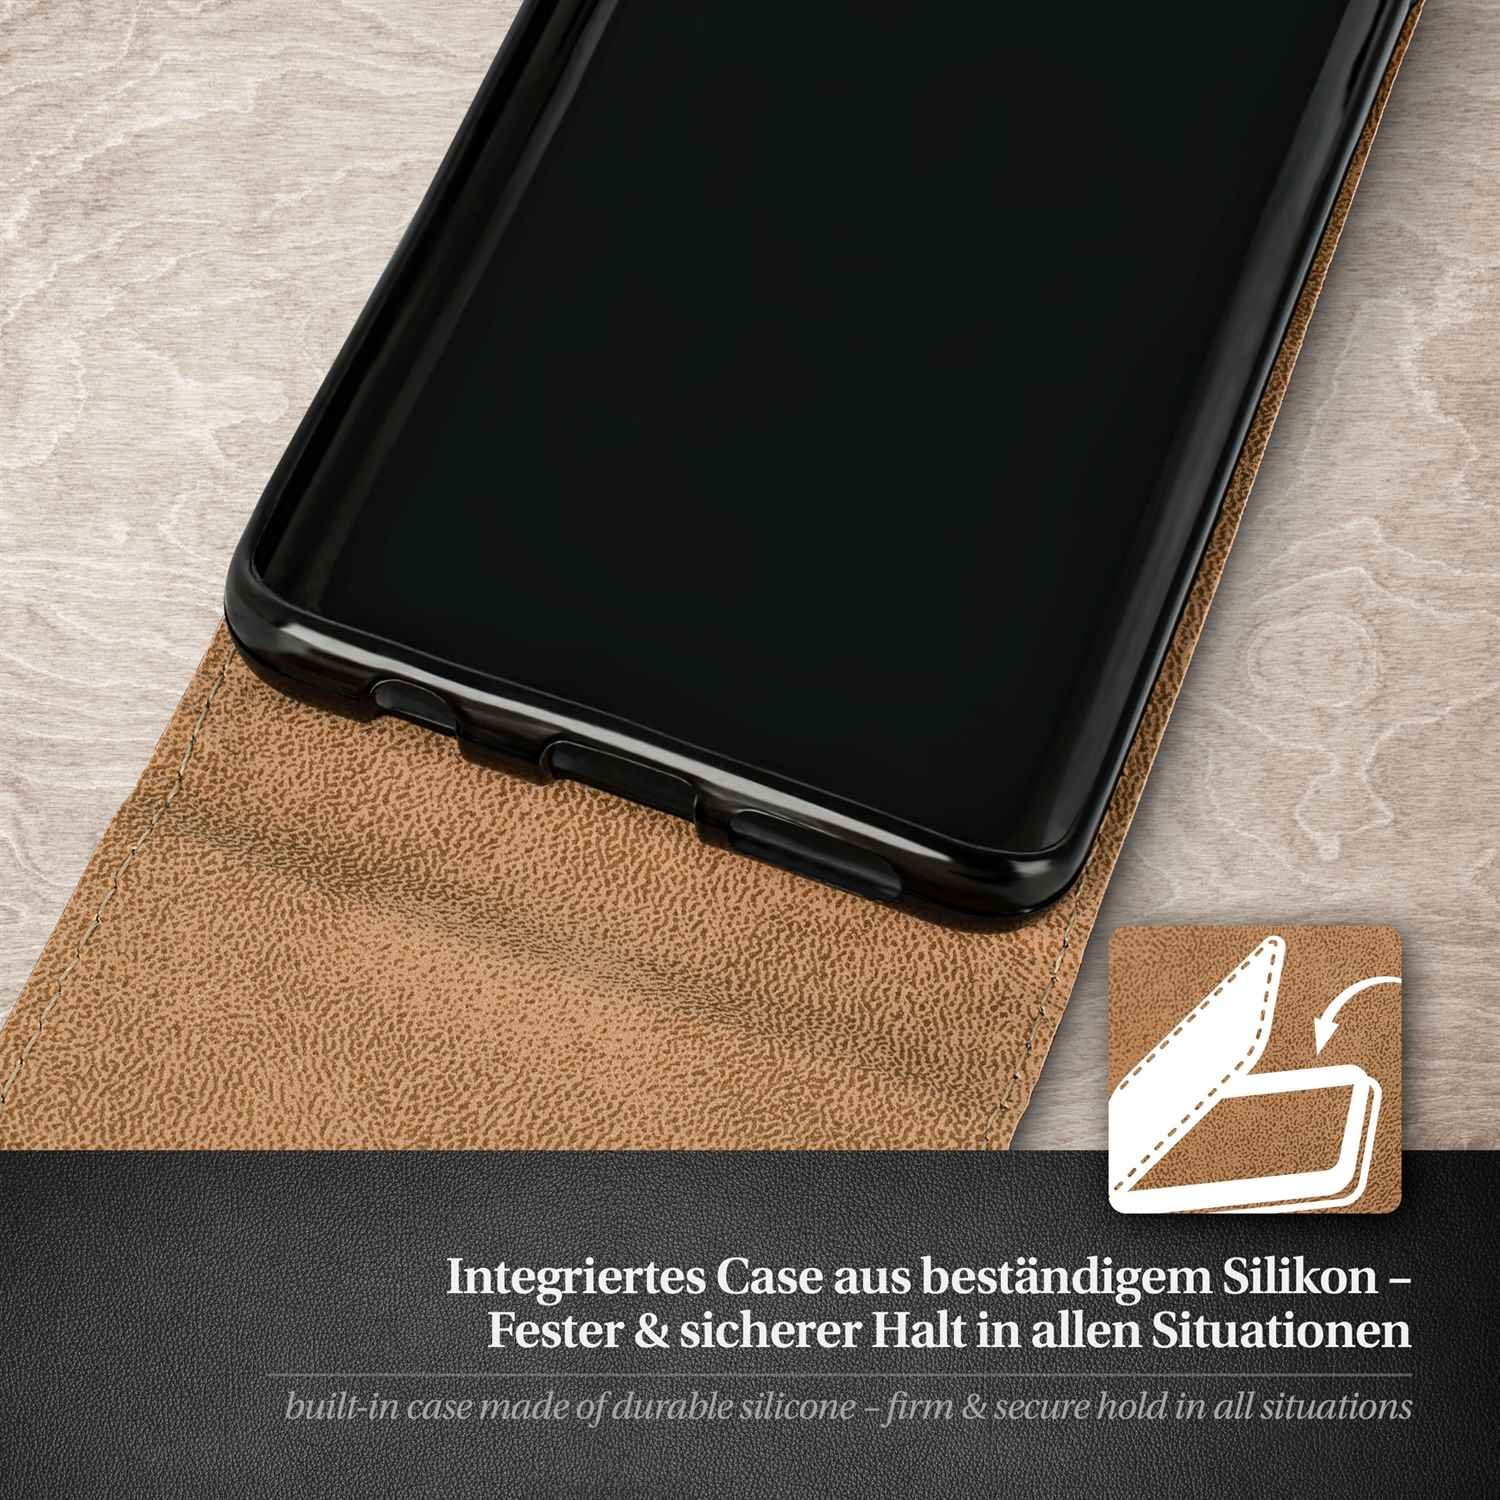 MOEX Flip Flip View Honor 20, Huawei, Deep-Black Cover, Case